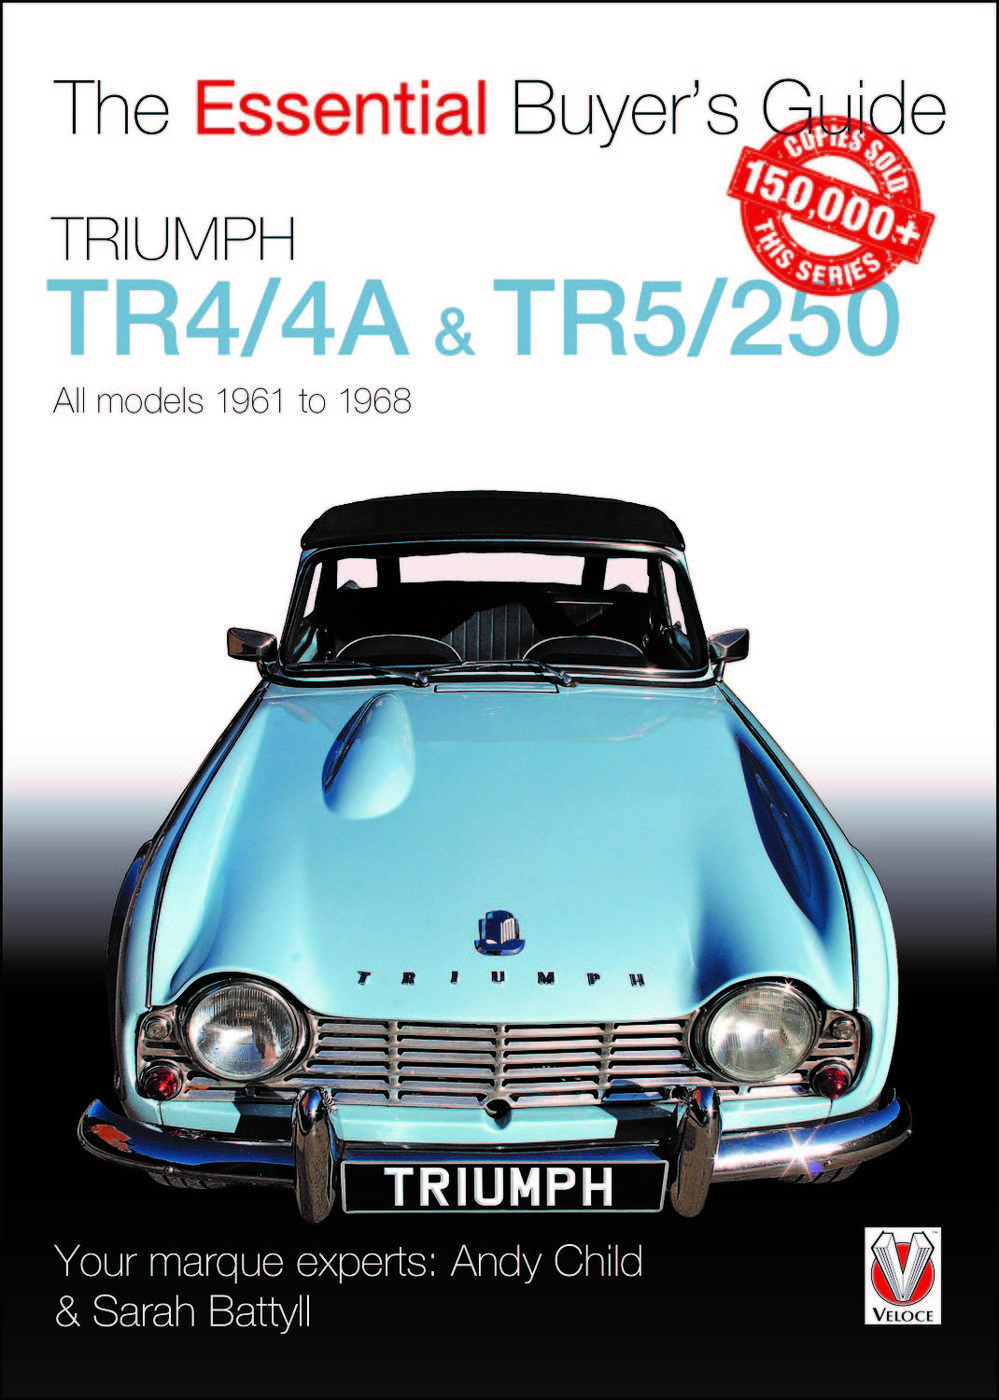 Triumph TR4/4A & TR5/250